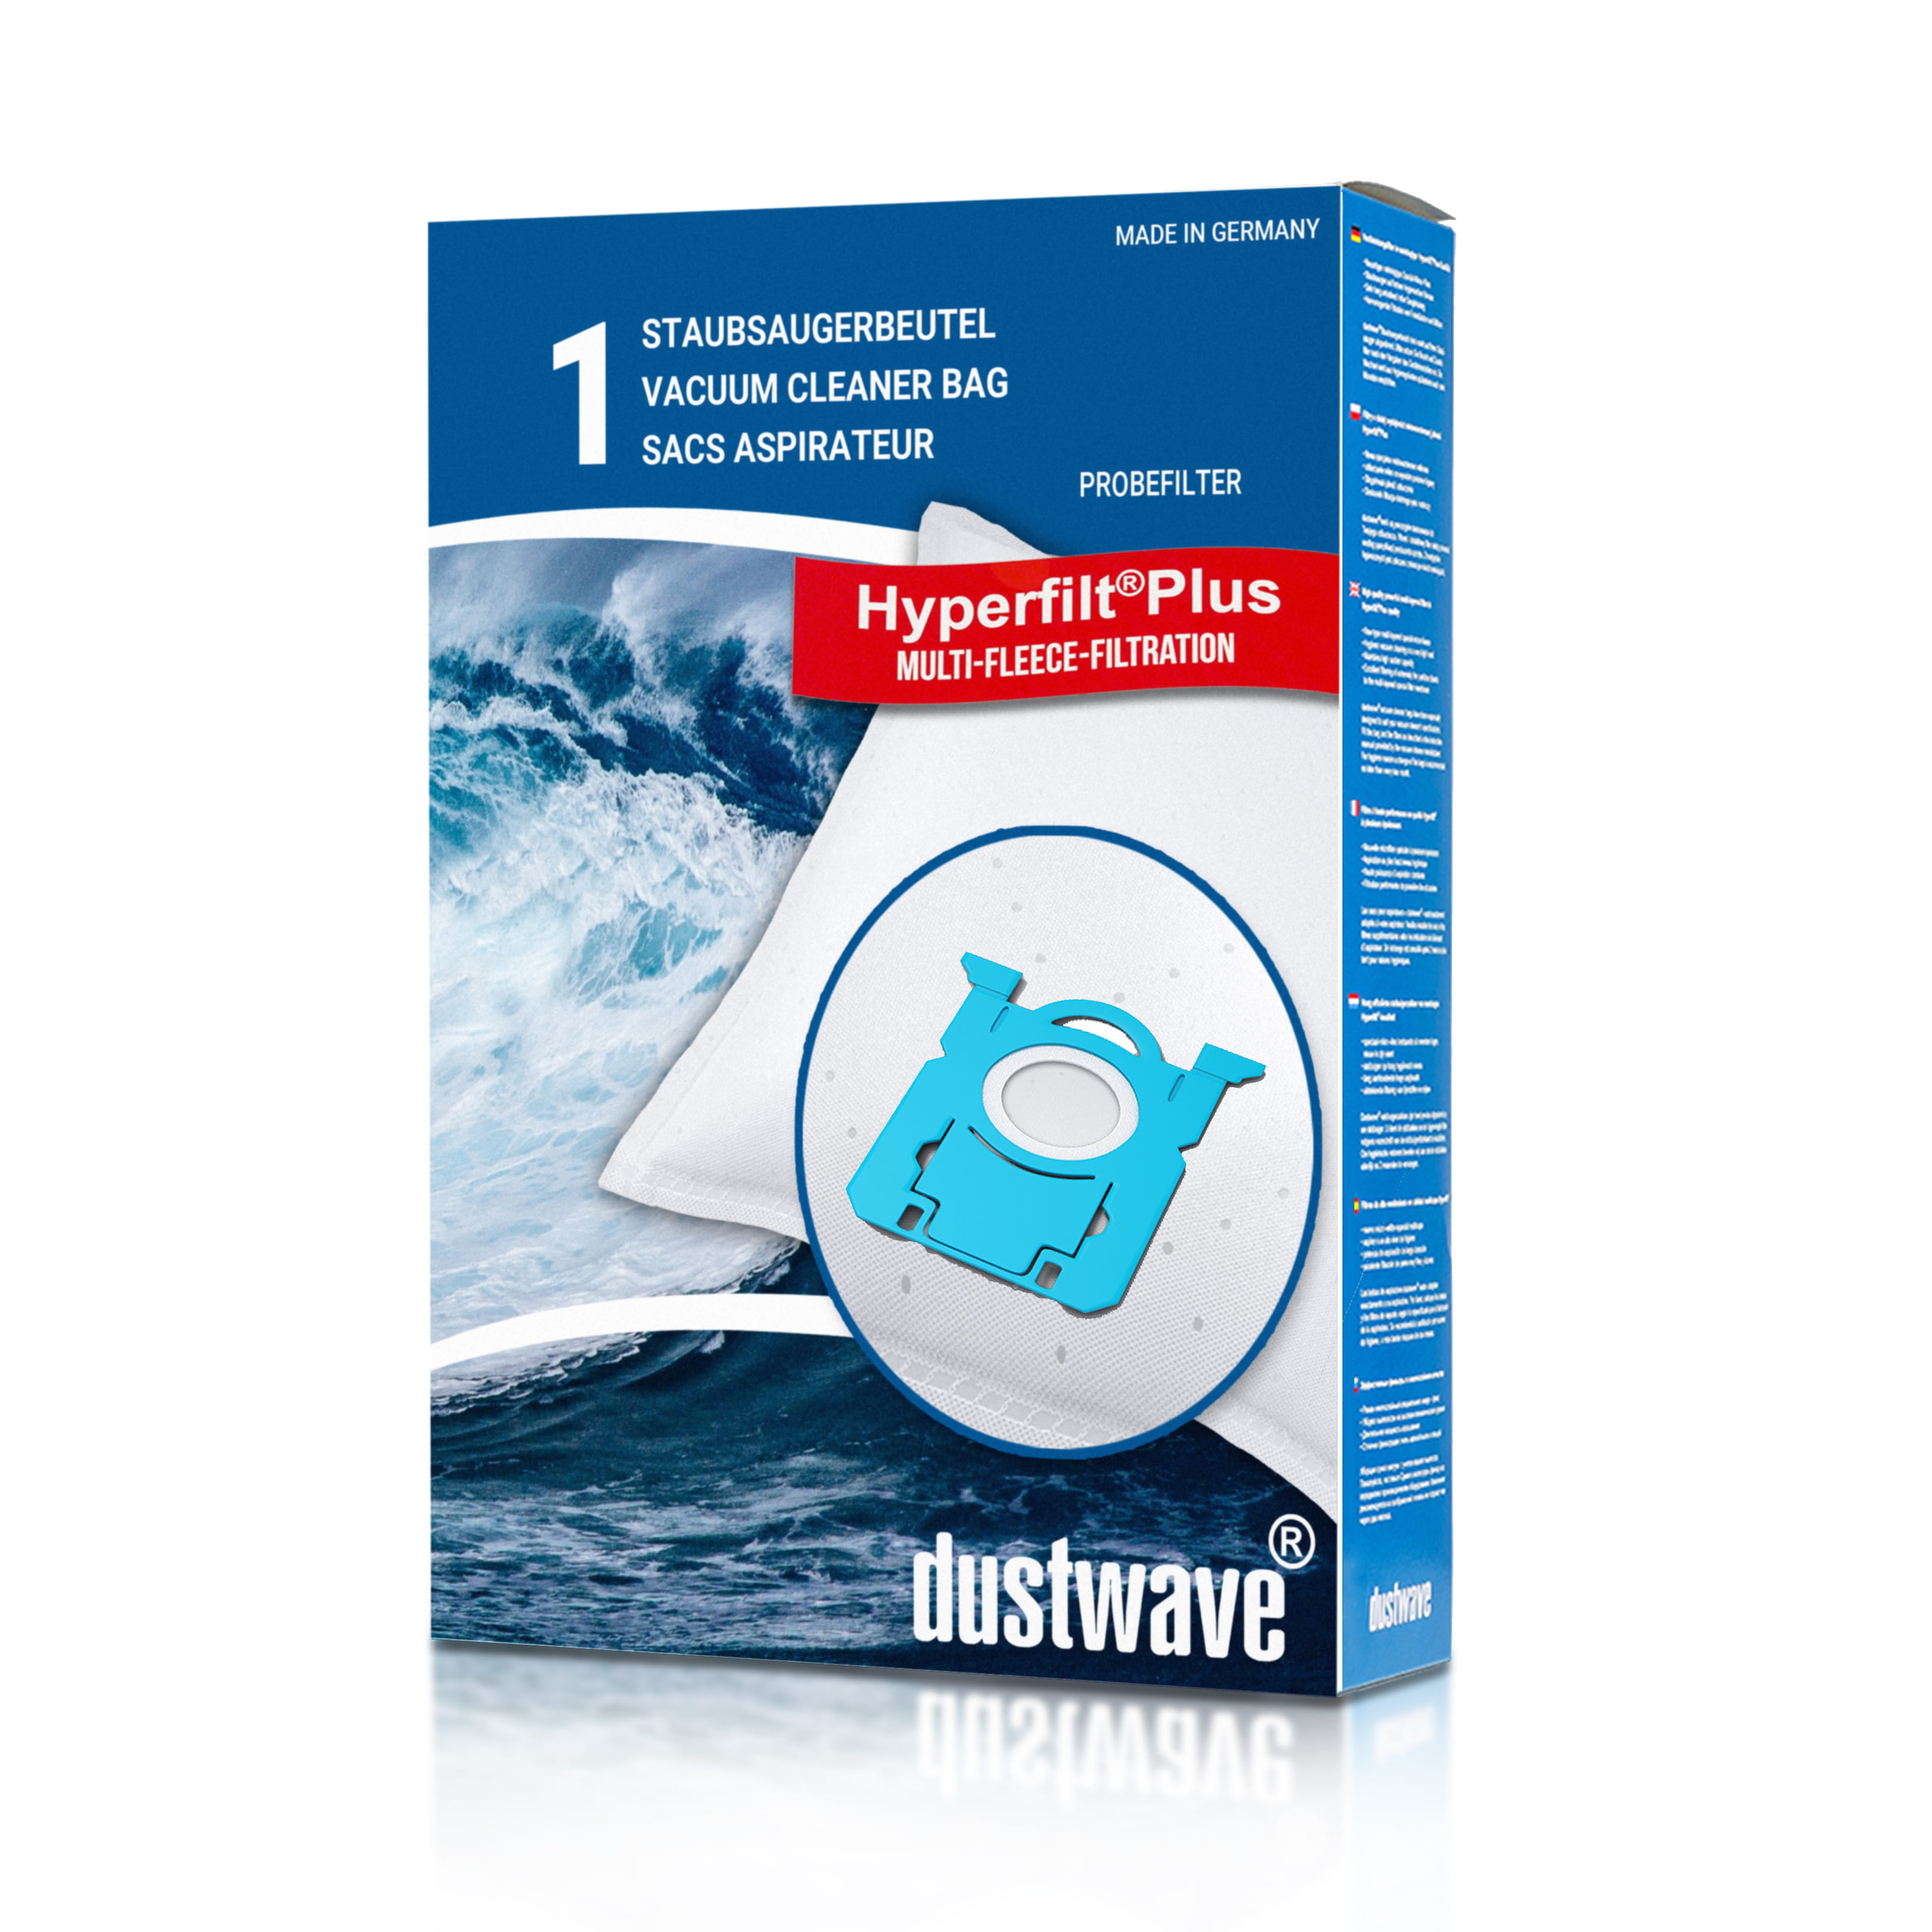 Dustwave® 1 Staubsaugerbeutel für AEG ASP 7160 / ASP 7160 Silentperformer - hocheffizient, mehrlagiges Mikrovlies mit Hygieneverschluss - Made in Germany